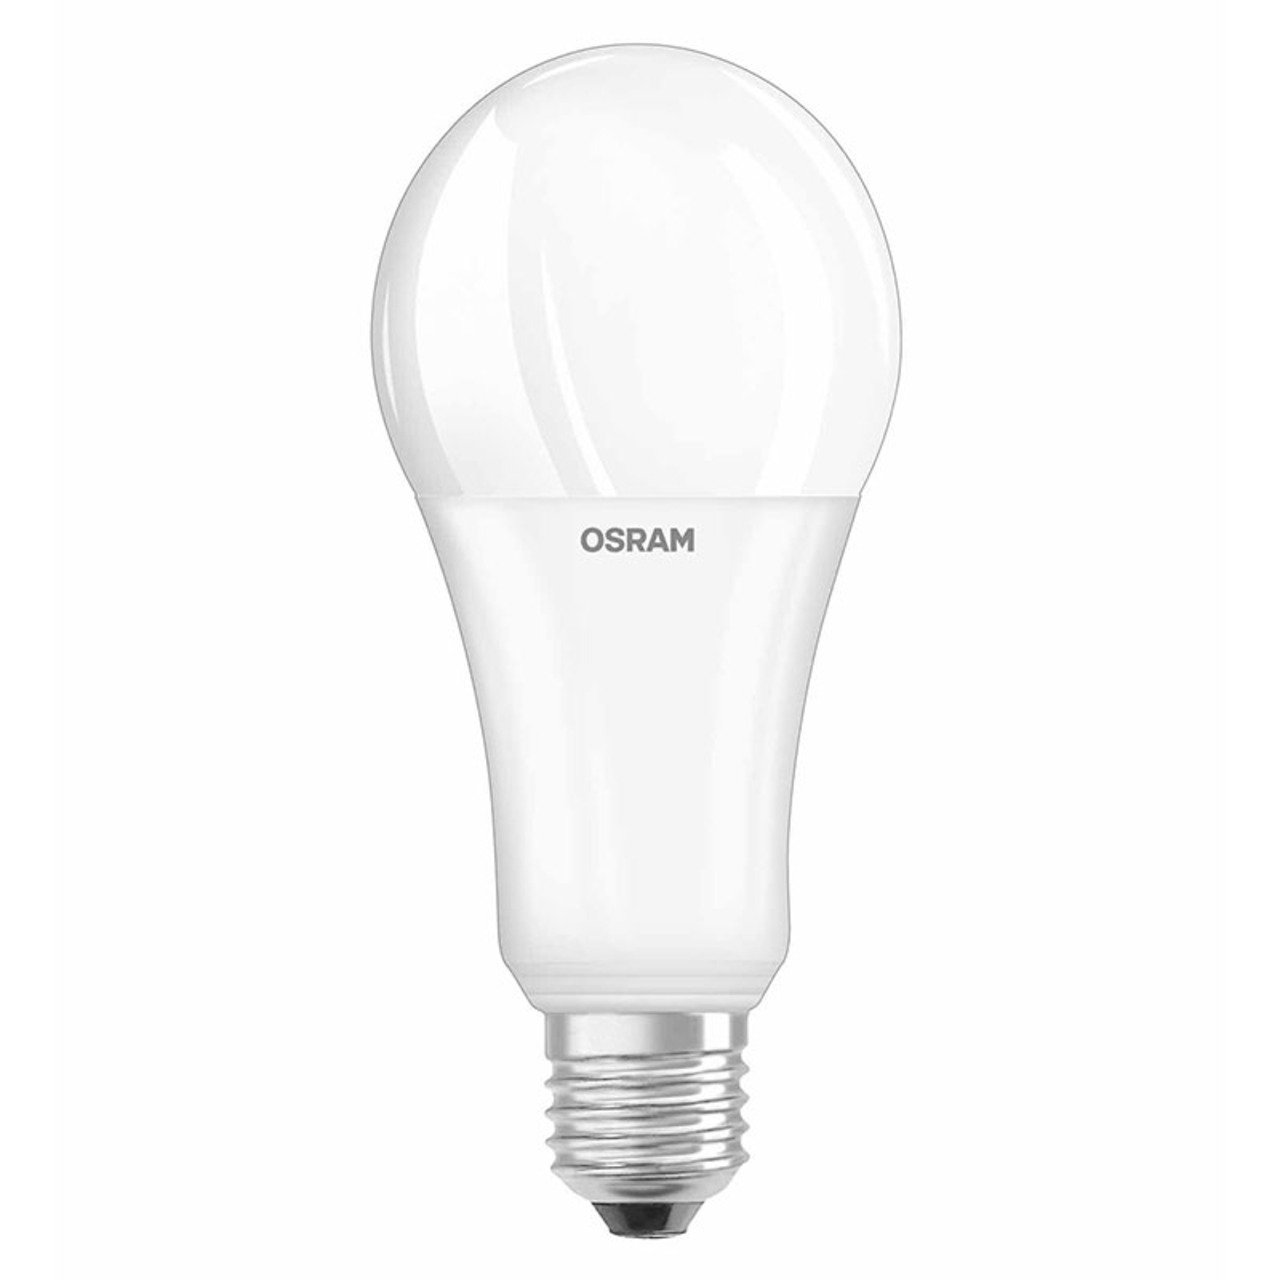 OSRAM LED SUPERSTAR 20-W-LED-Lampe E27- matt- dimmbar- 2452 lm unter Beleuchtung